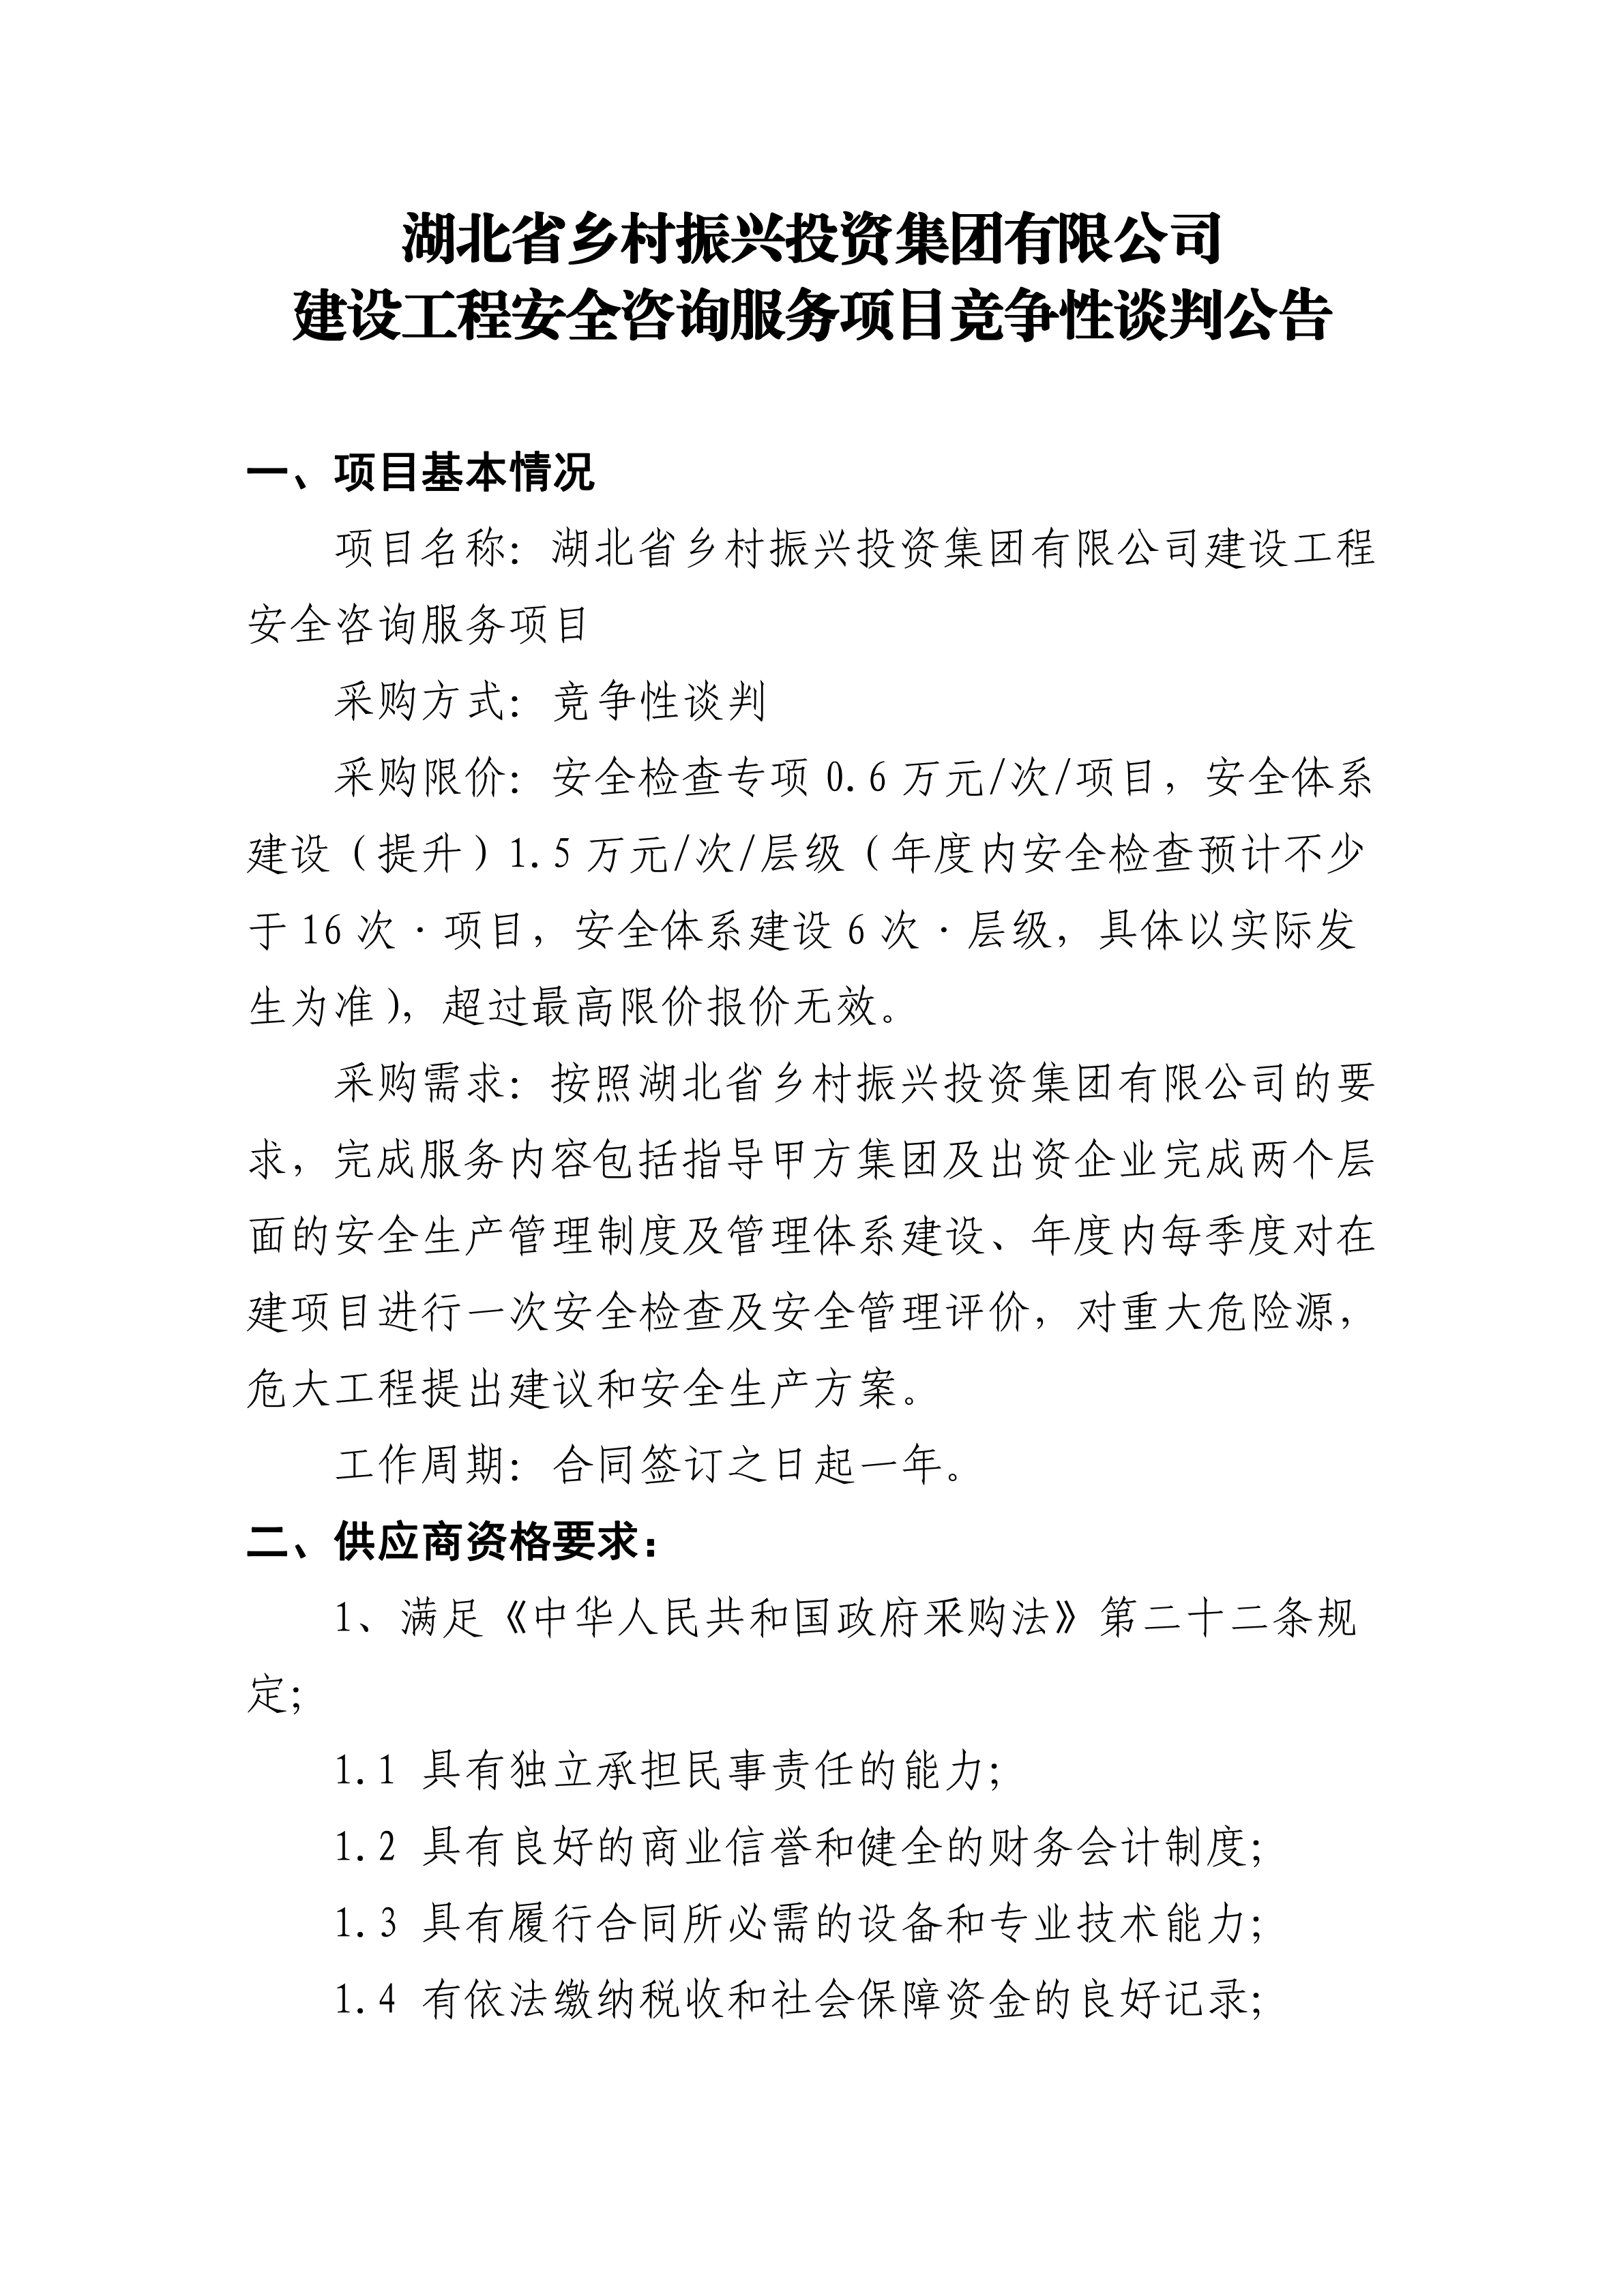 手机买球官网(中国)科技有限公司建设工程安全咨询服务项目竞争性谈判公告(0719)_00.png